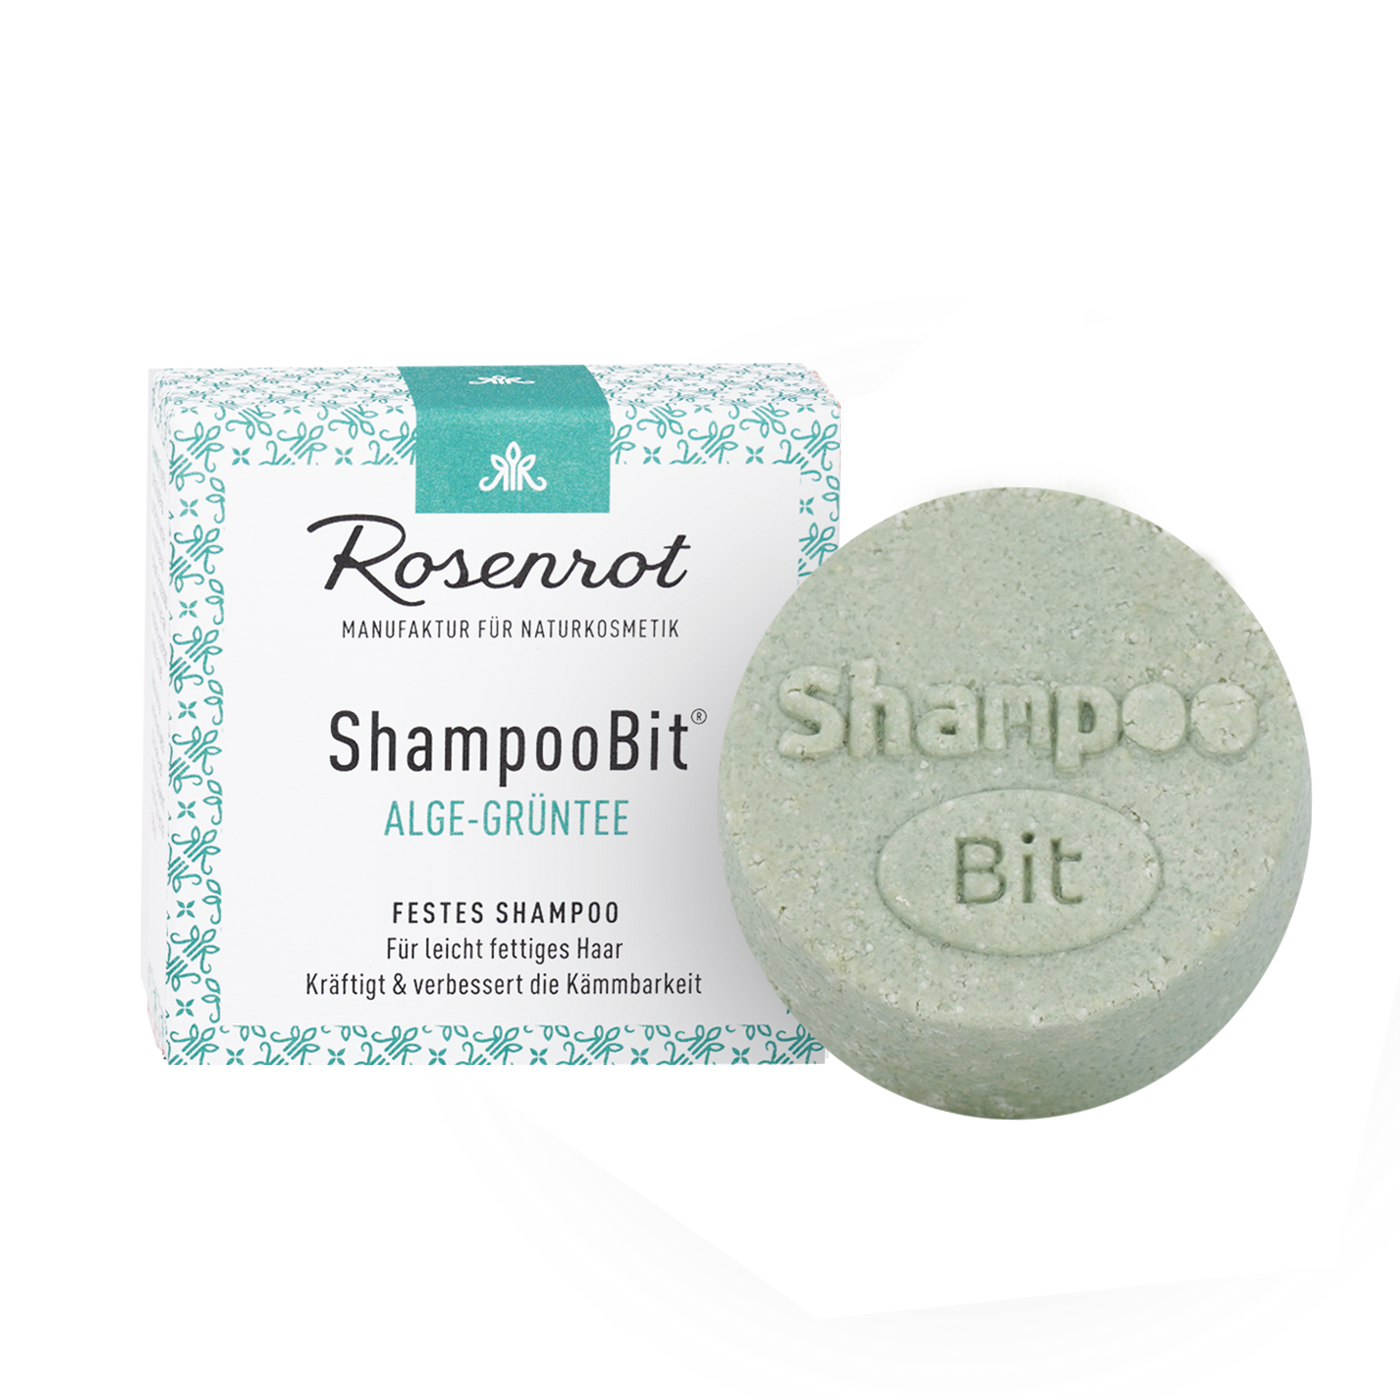 ShampooBit® Alge-Grüntee